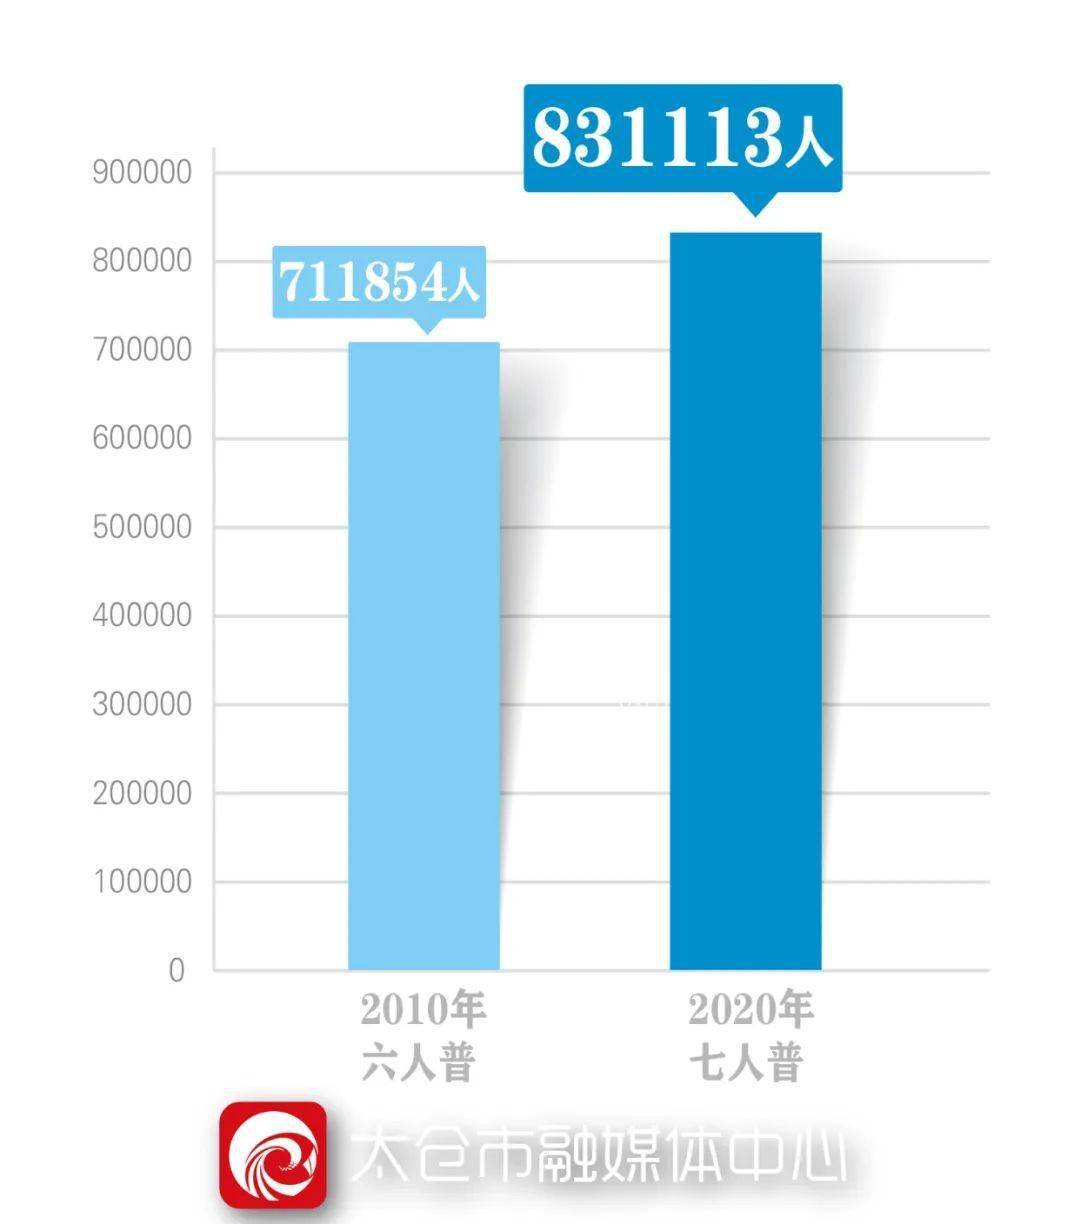 昆山市人口有多少_84748016人 南京,931万